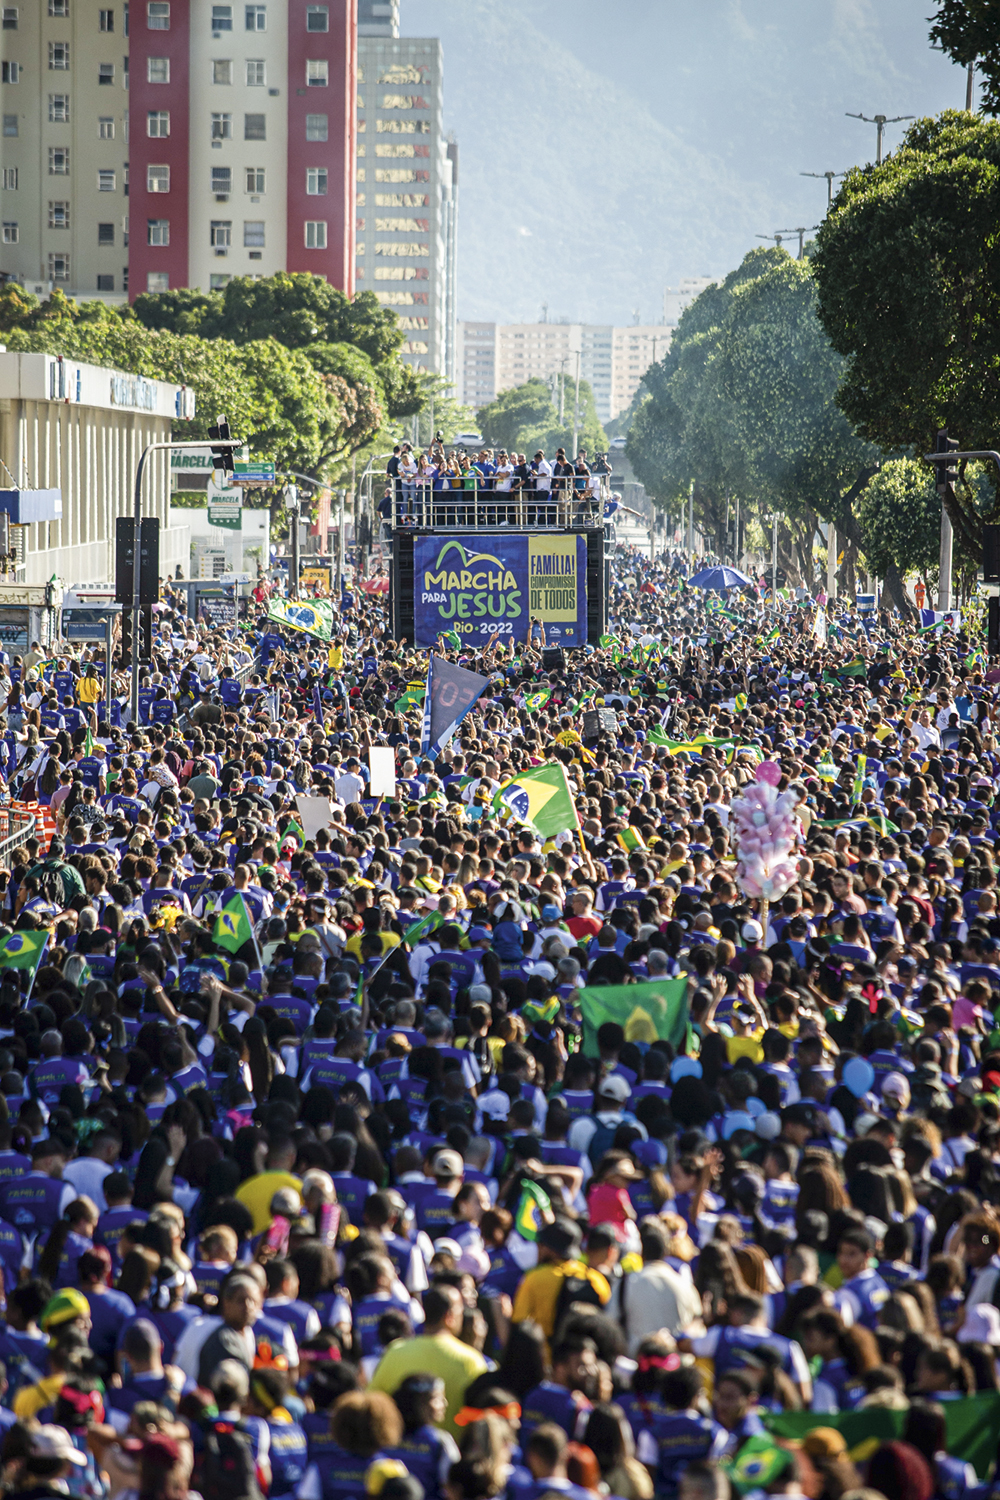 ALIADOS - Marcha evangélica no Rio: Bolsonaro prestigiou seu eleitorado -